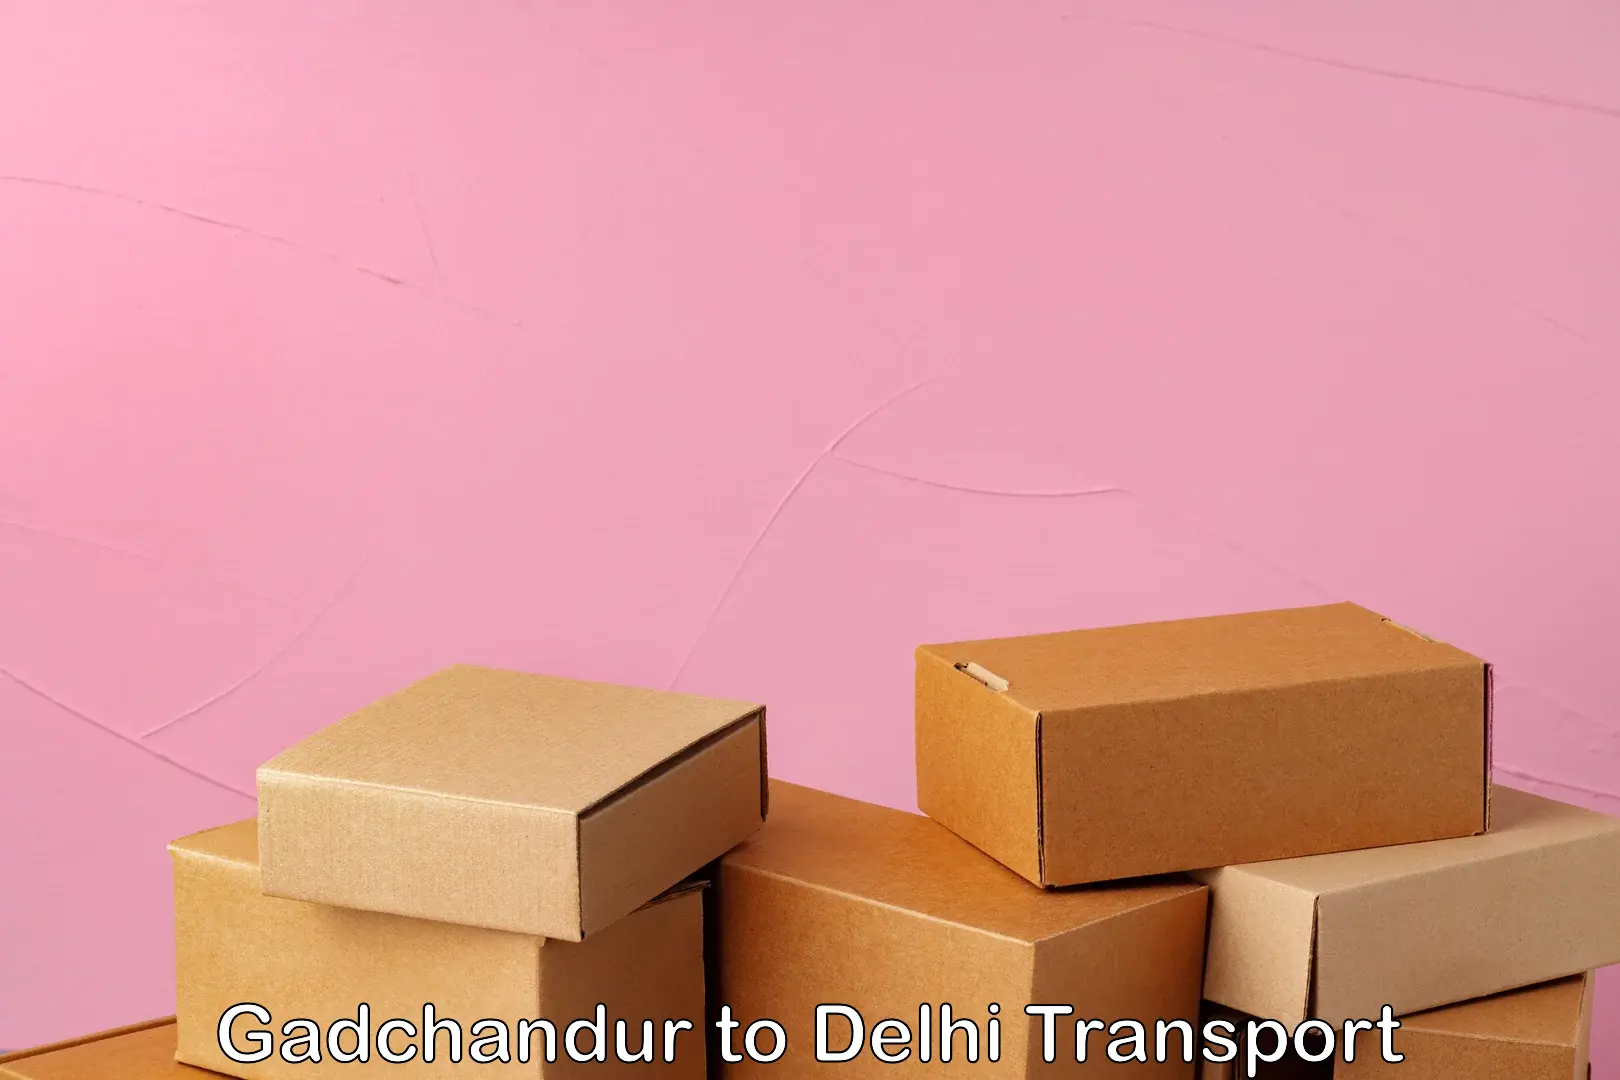 Lorry transport service Gadchandur to Delhi